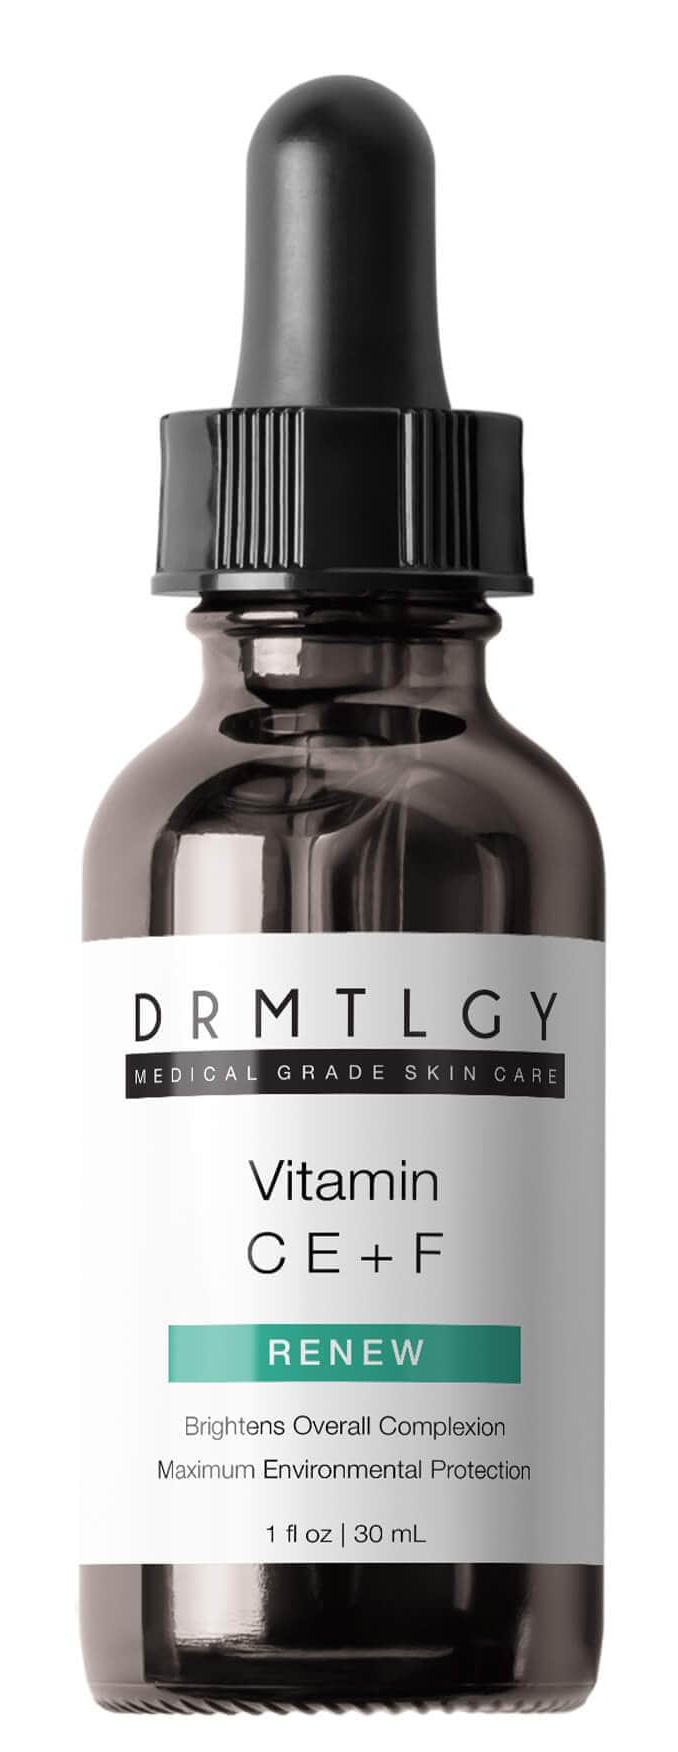 DRMTLGY Vitamin Ce+f Renew